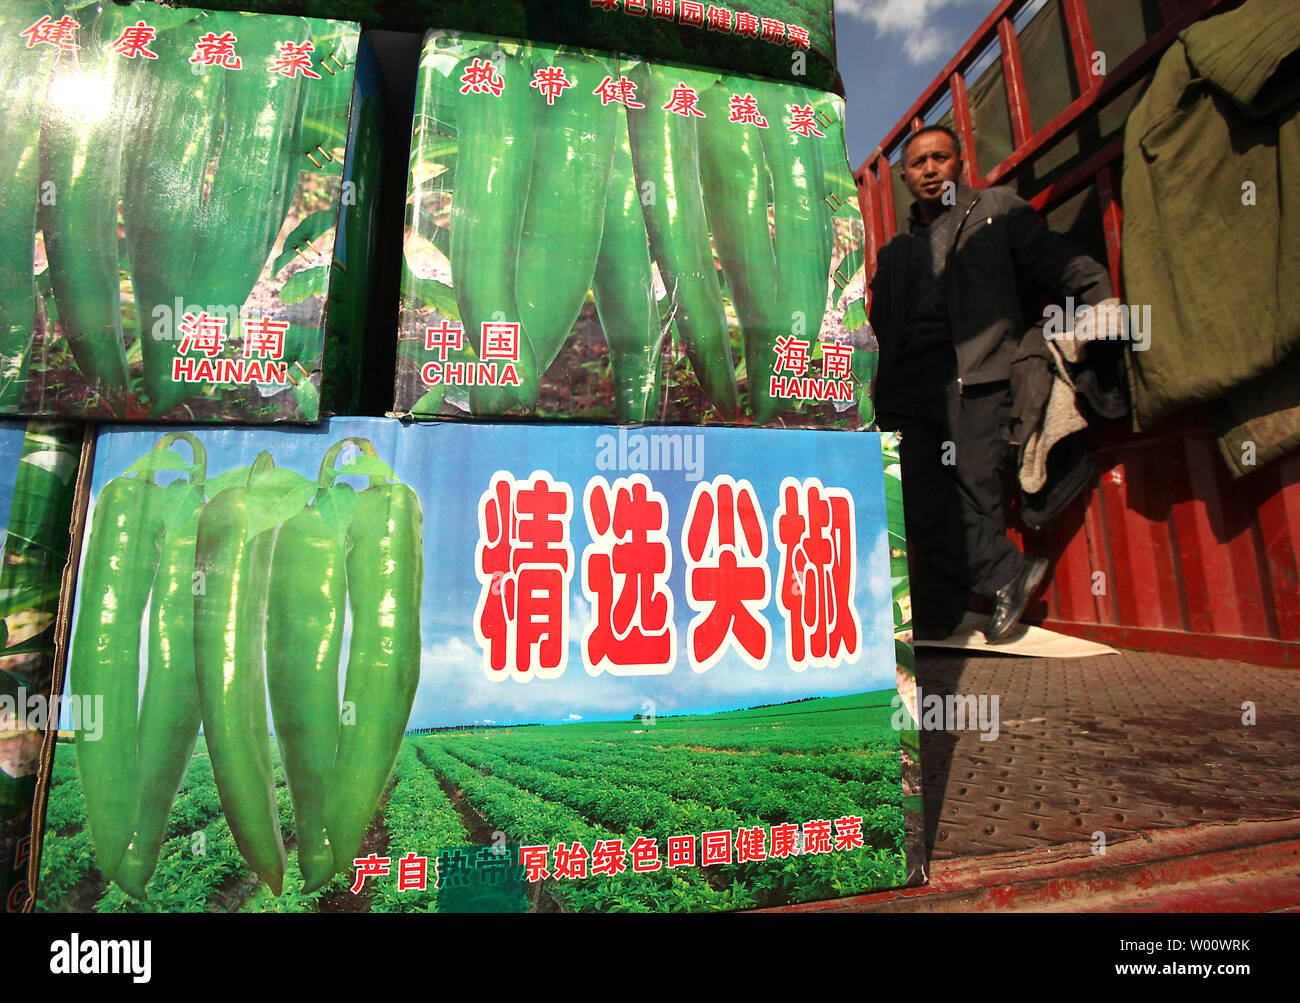 Herstellung von Käufern und Verkäufern Pekings größten Großhandelsmarkt für Agrarprodukte, 25. März 2011 besuchen. Die neuen nationalen Völker Kongress machte deutlich, dass Nahrung und Wohnung preisstabilität, anstatt Wachstum, die oberste Priorität in China geworden war. UPI/Stephen Rasierer Stockfoto